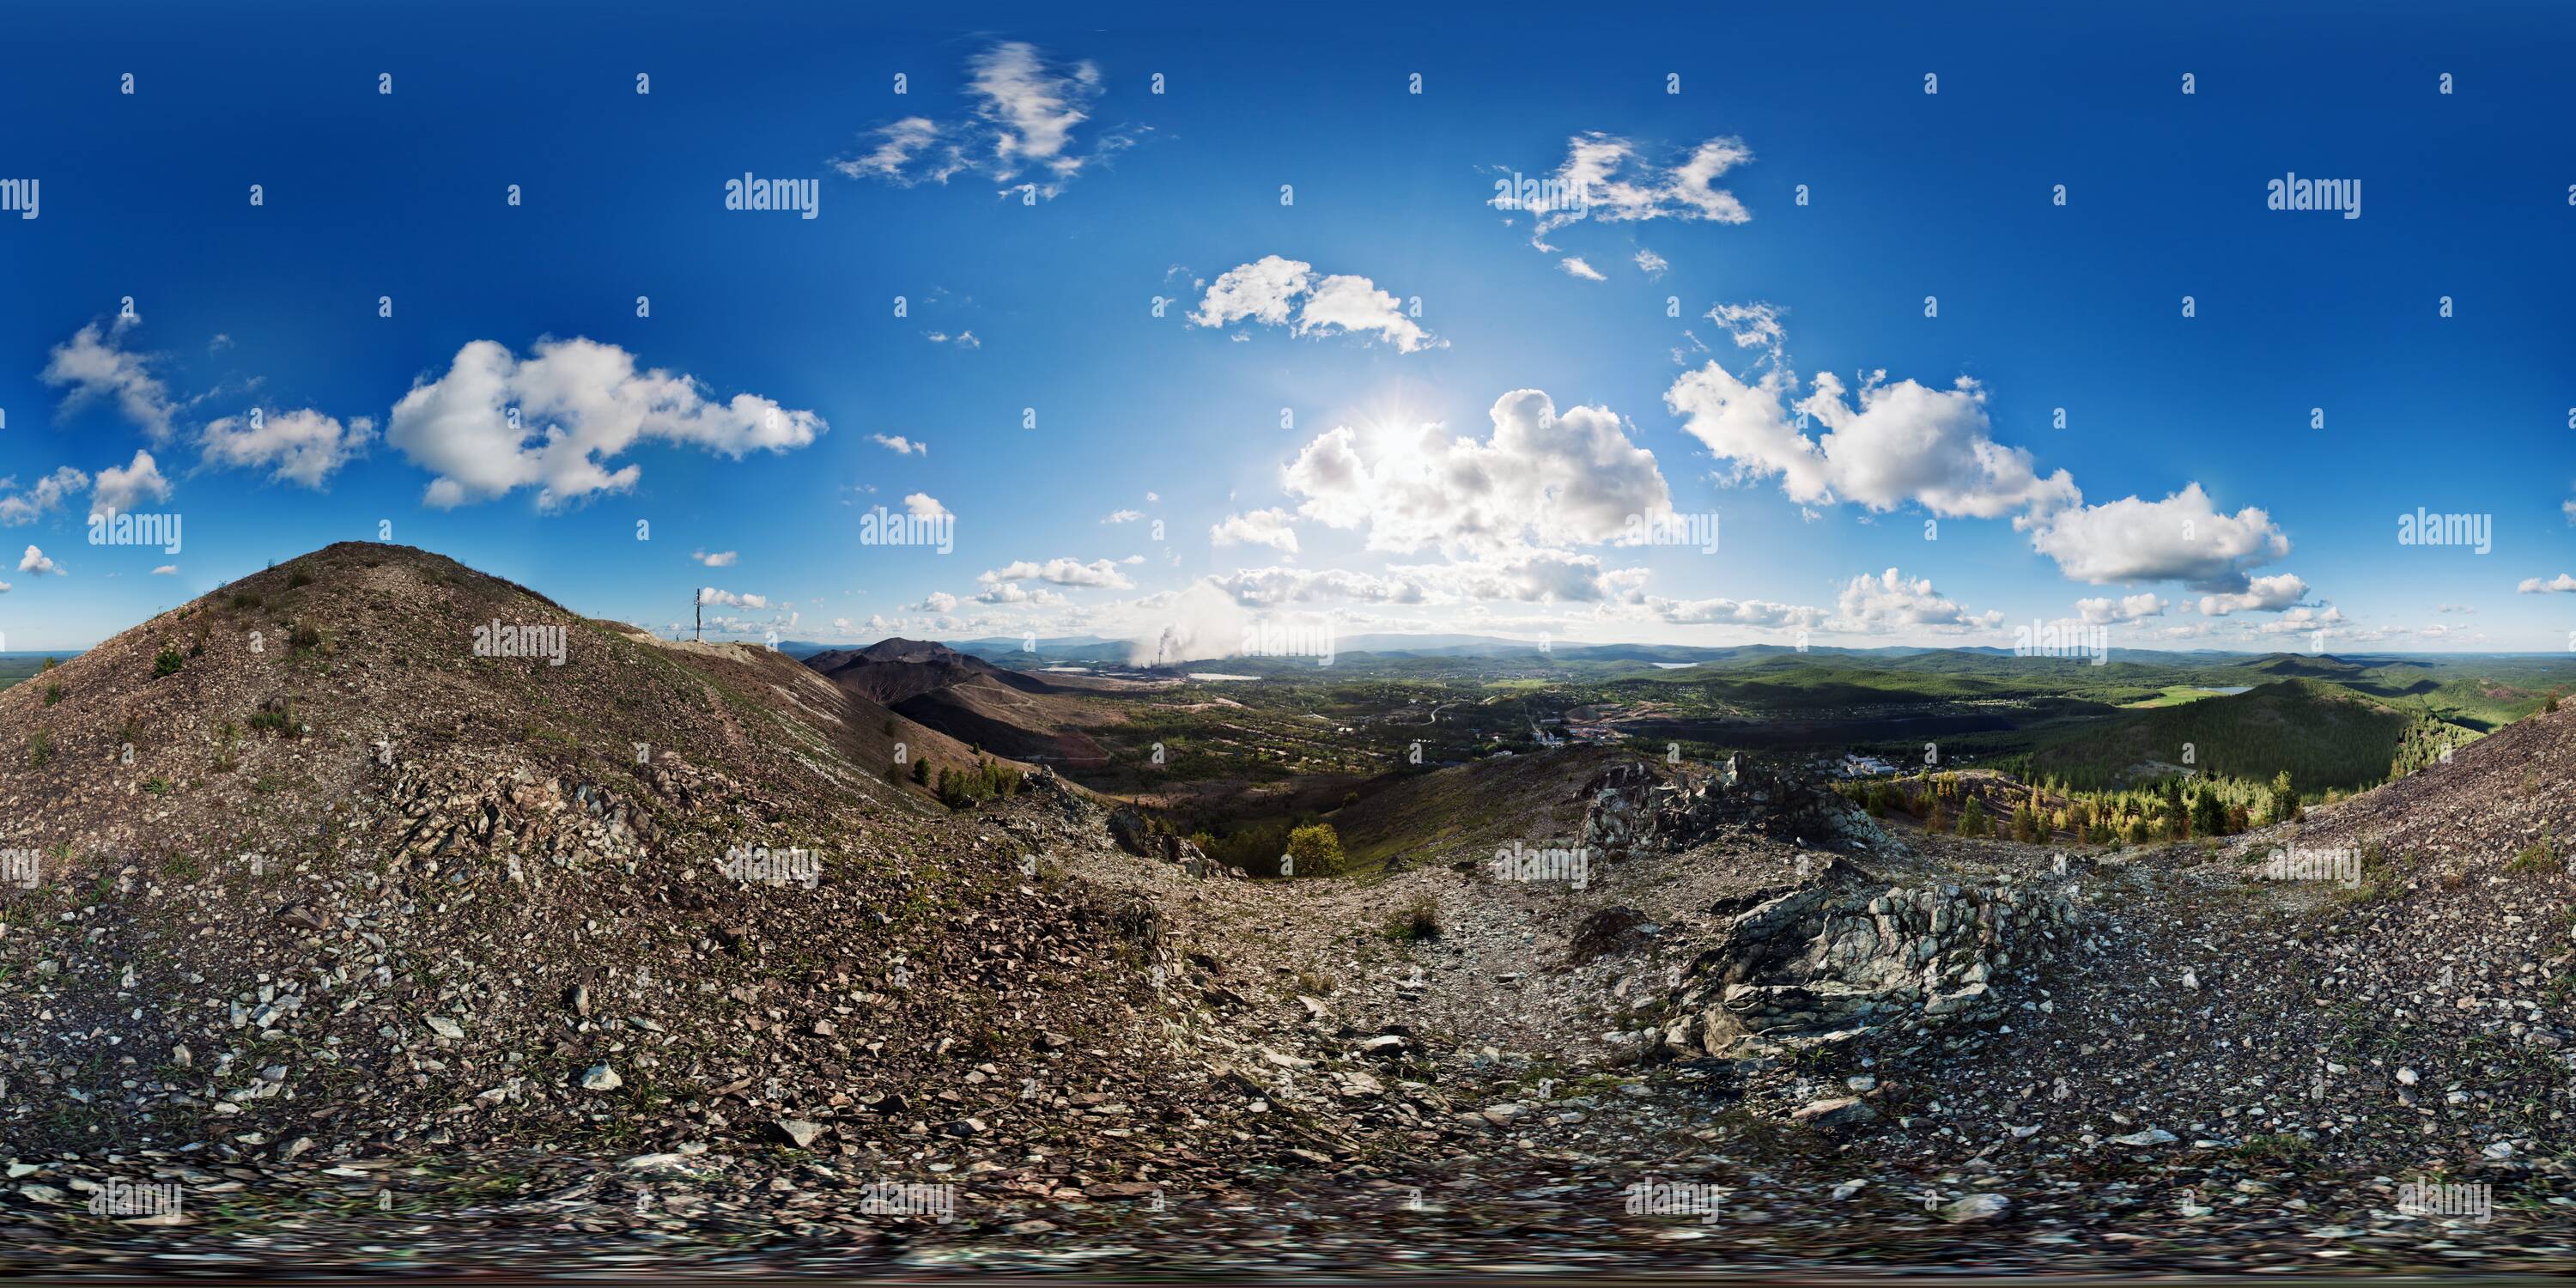 Vue panoramique à 360° de L'Panorama 360villes